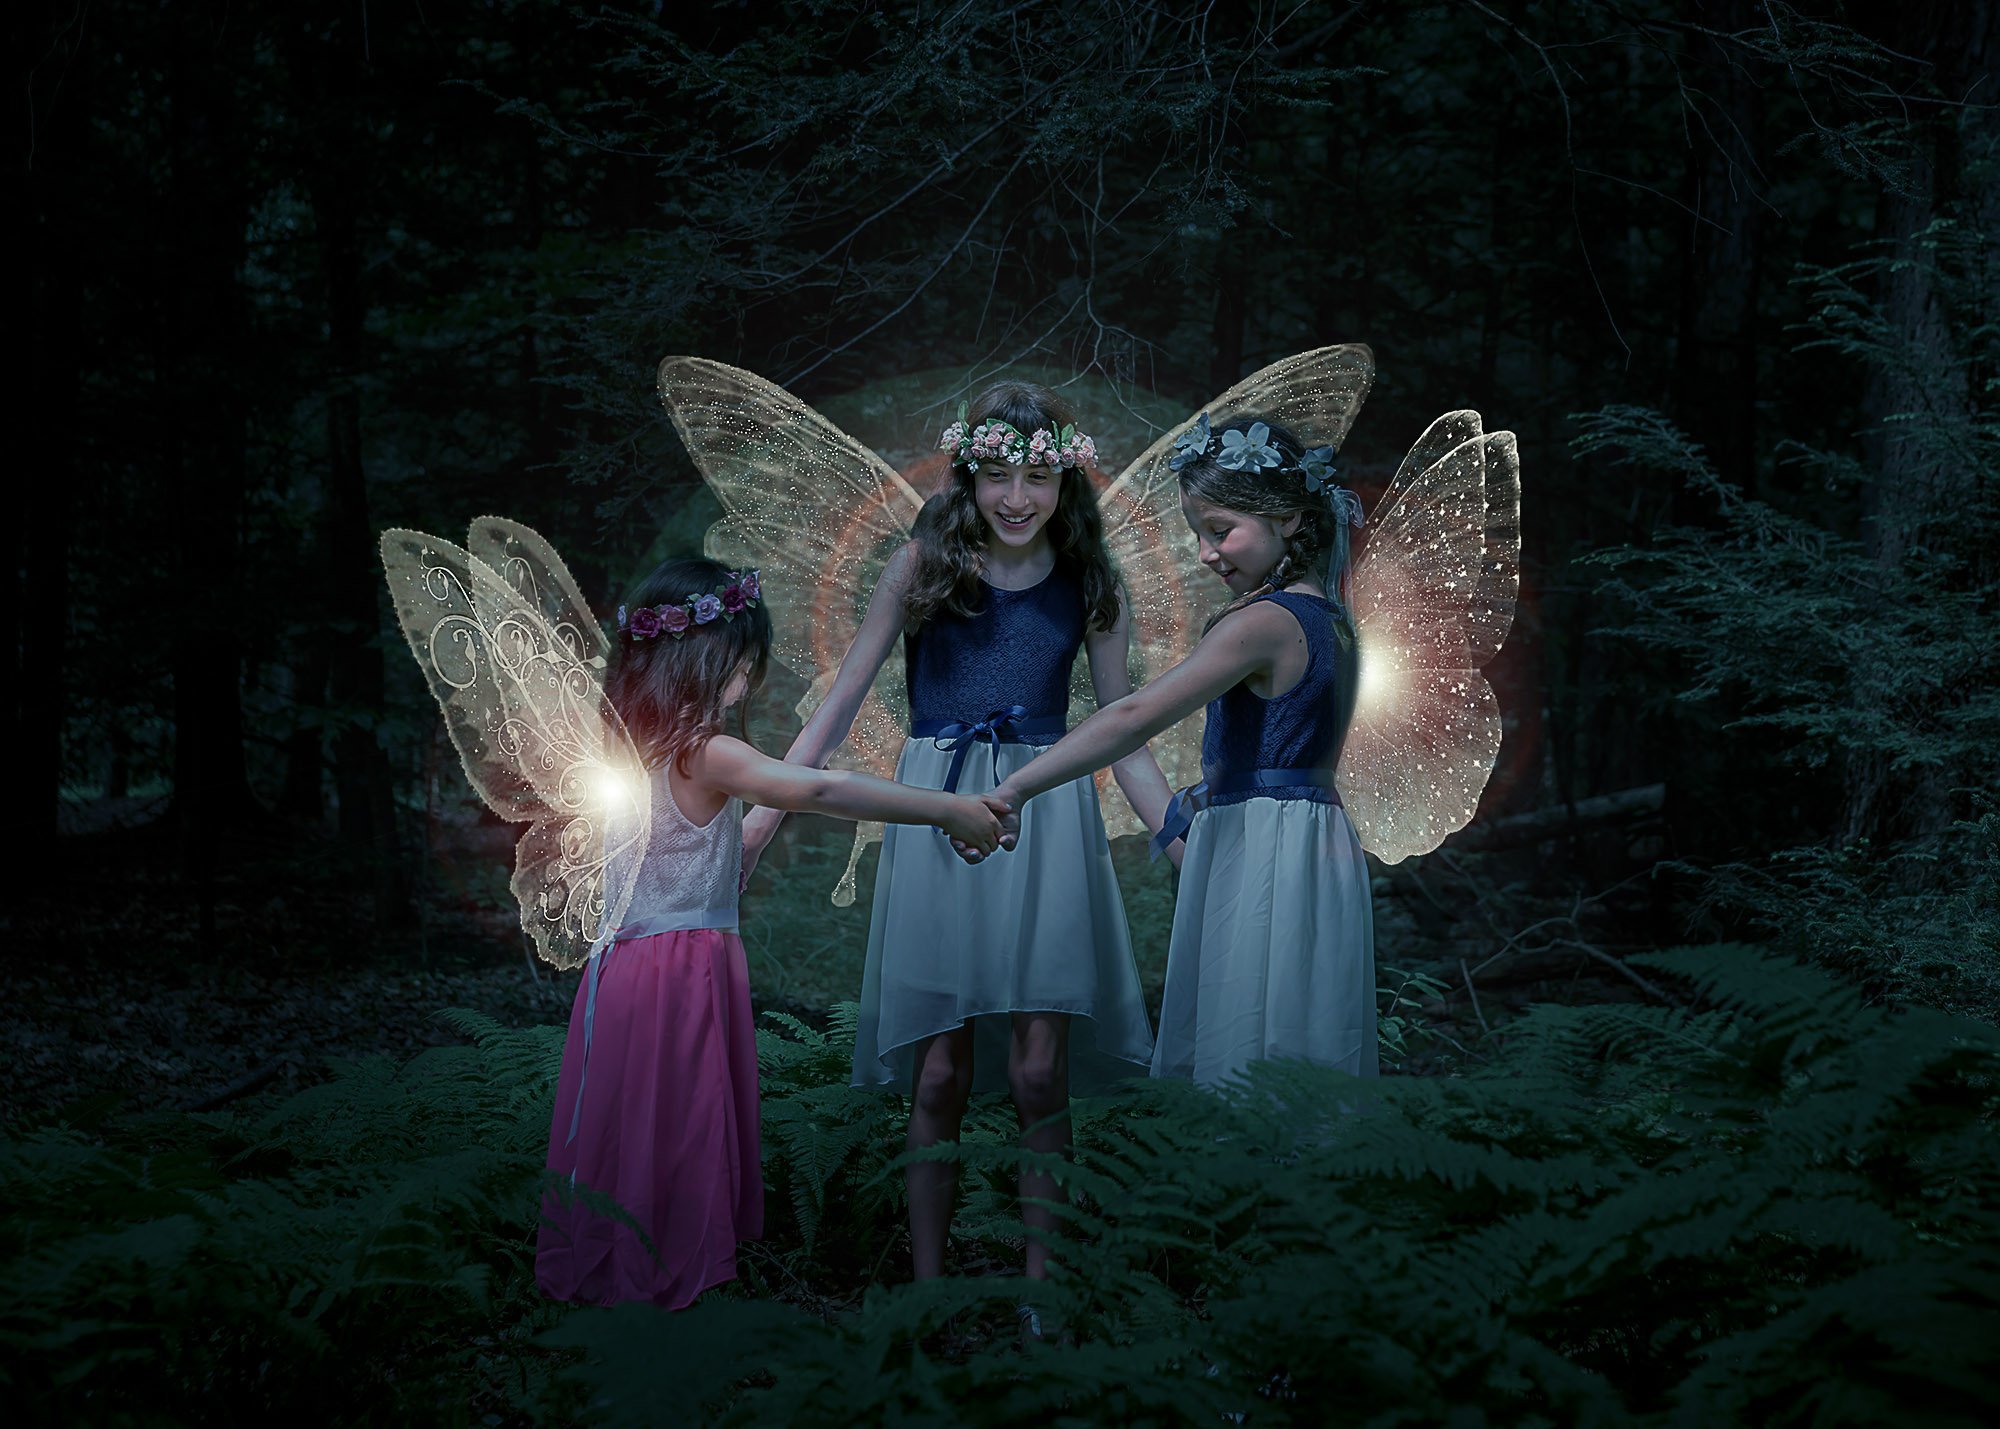 Three fairies dancing in a circle at night